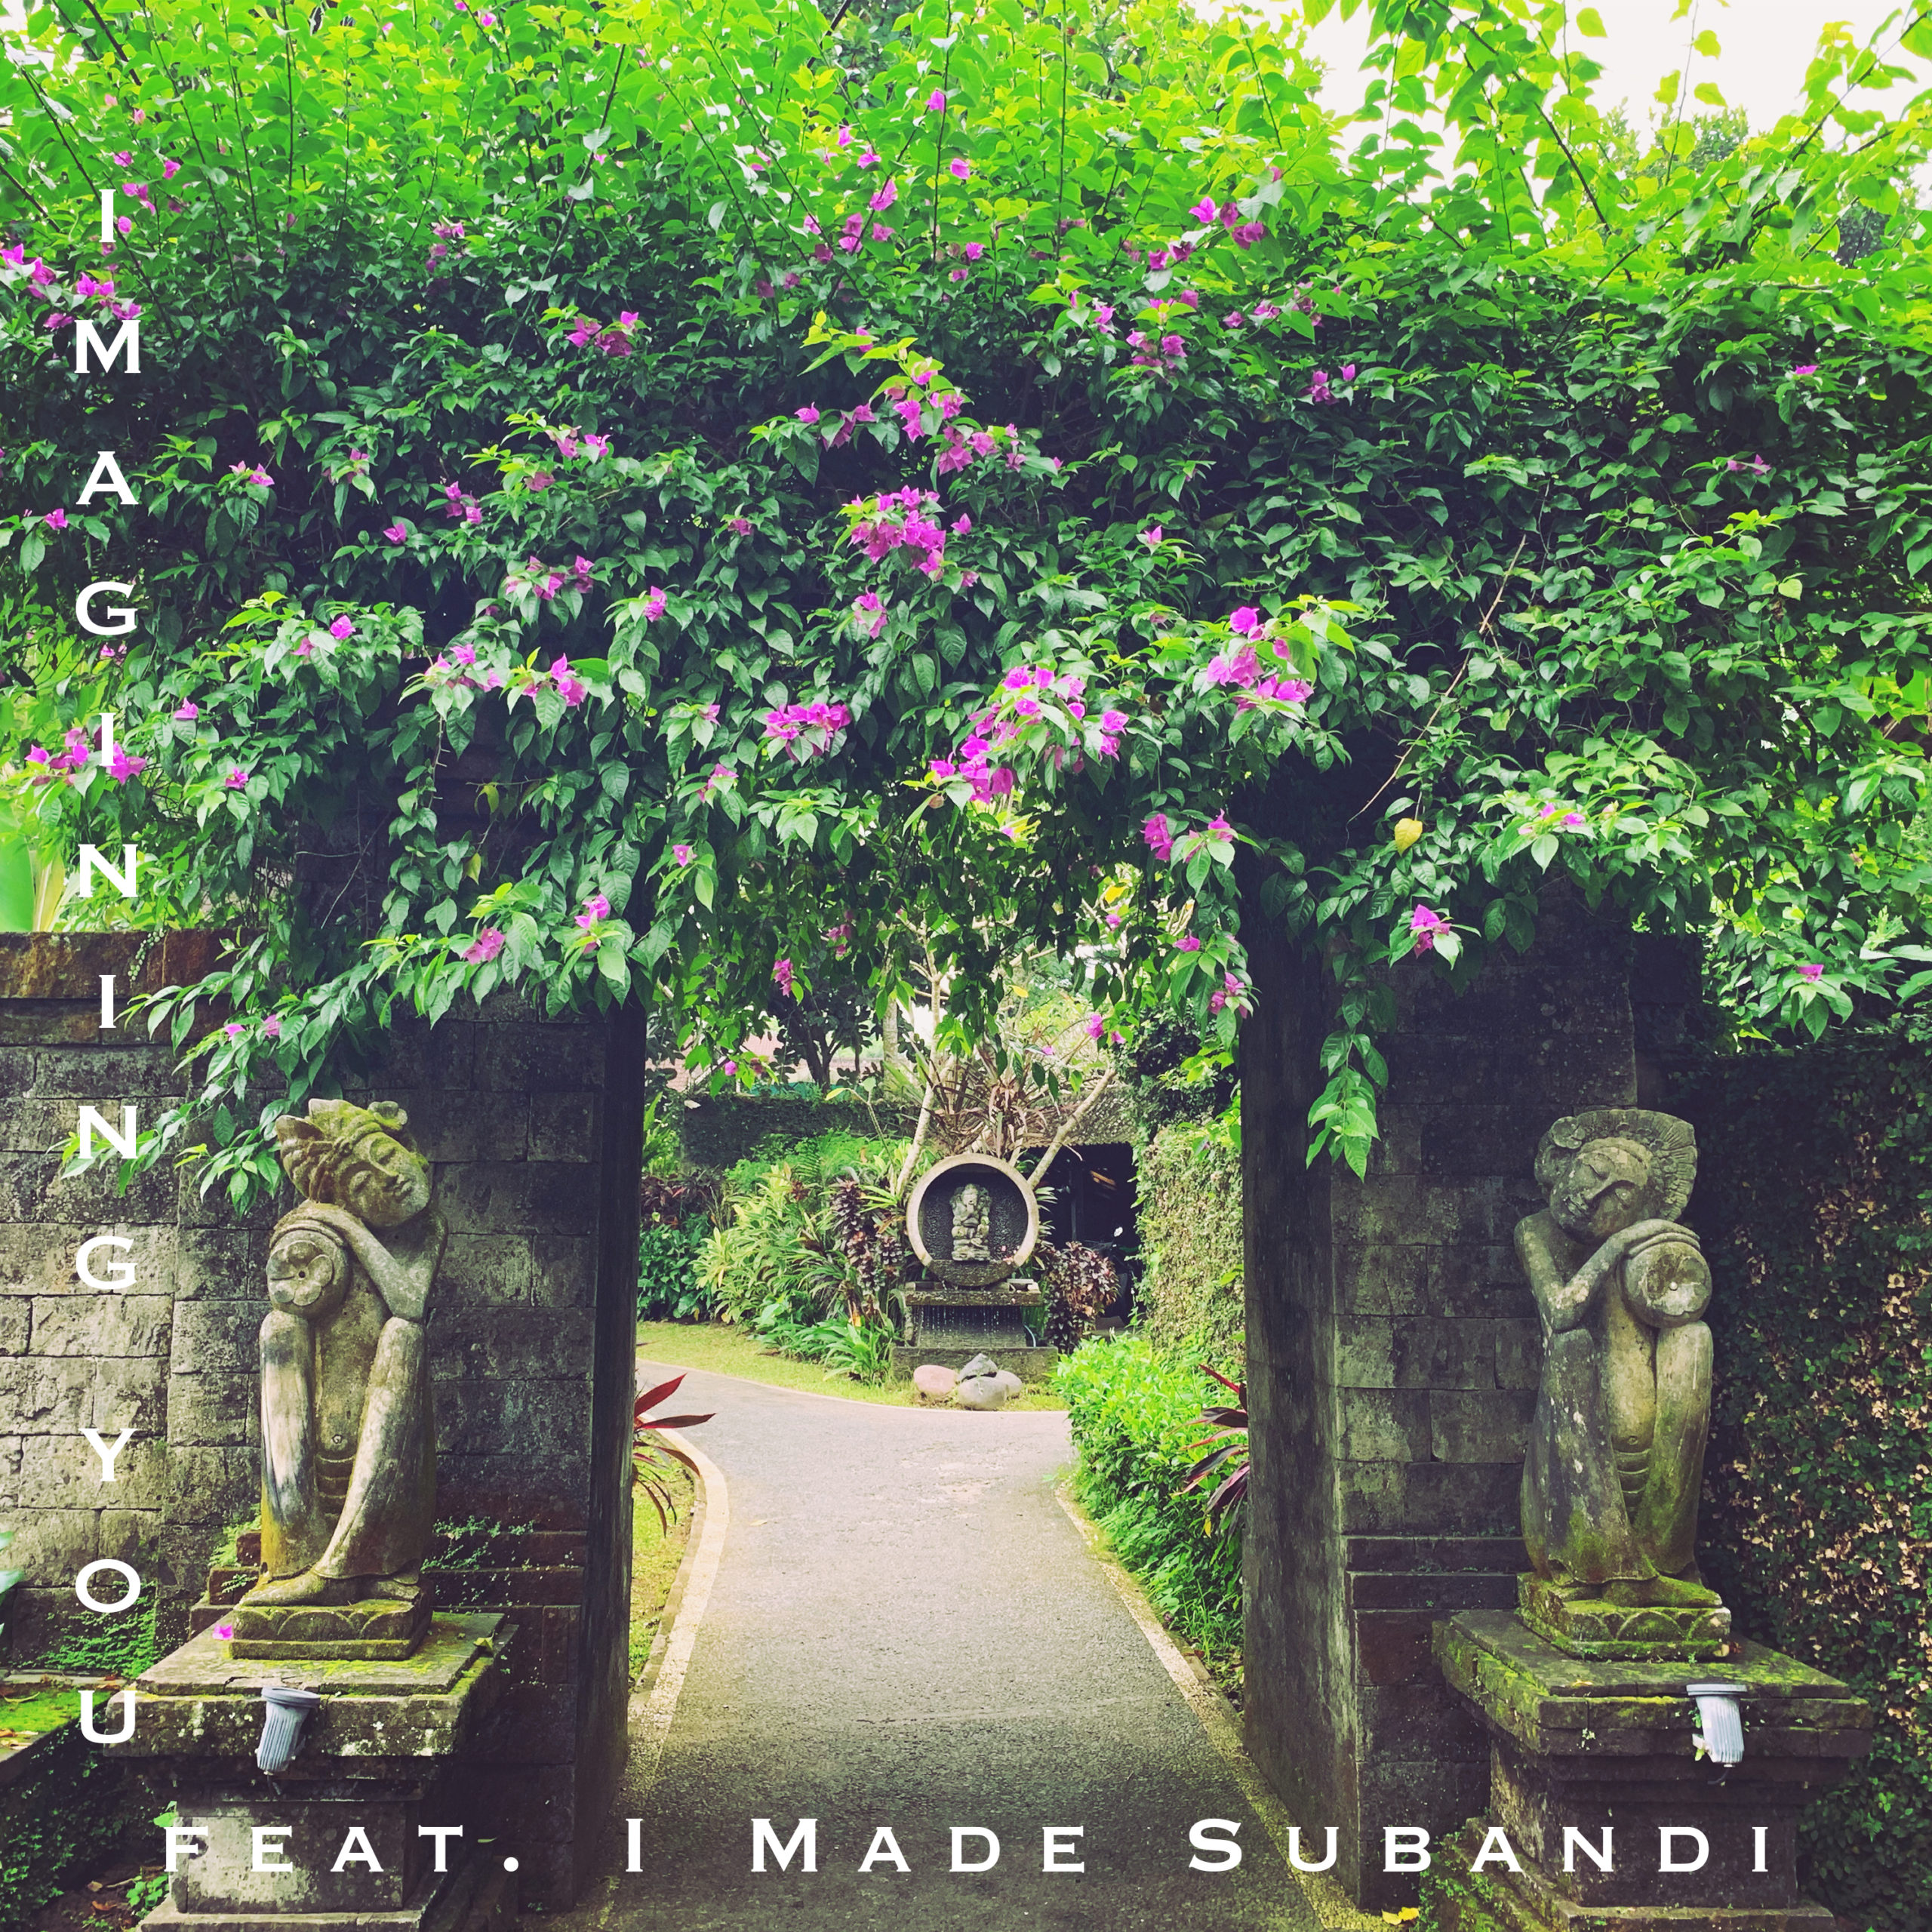 New Single: Imagining You (feat. I Made Subandi)